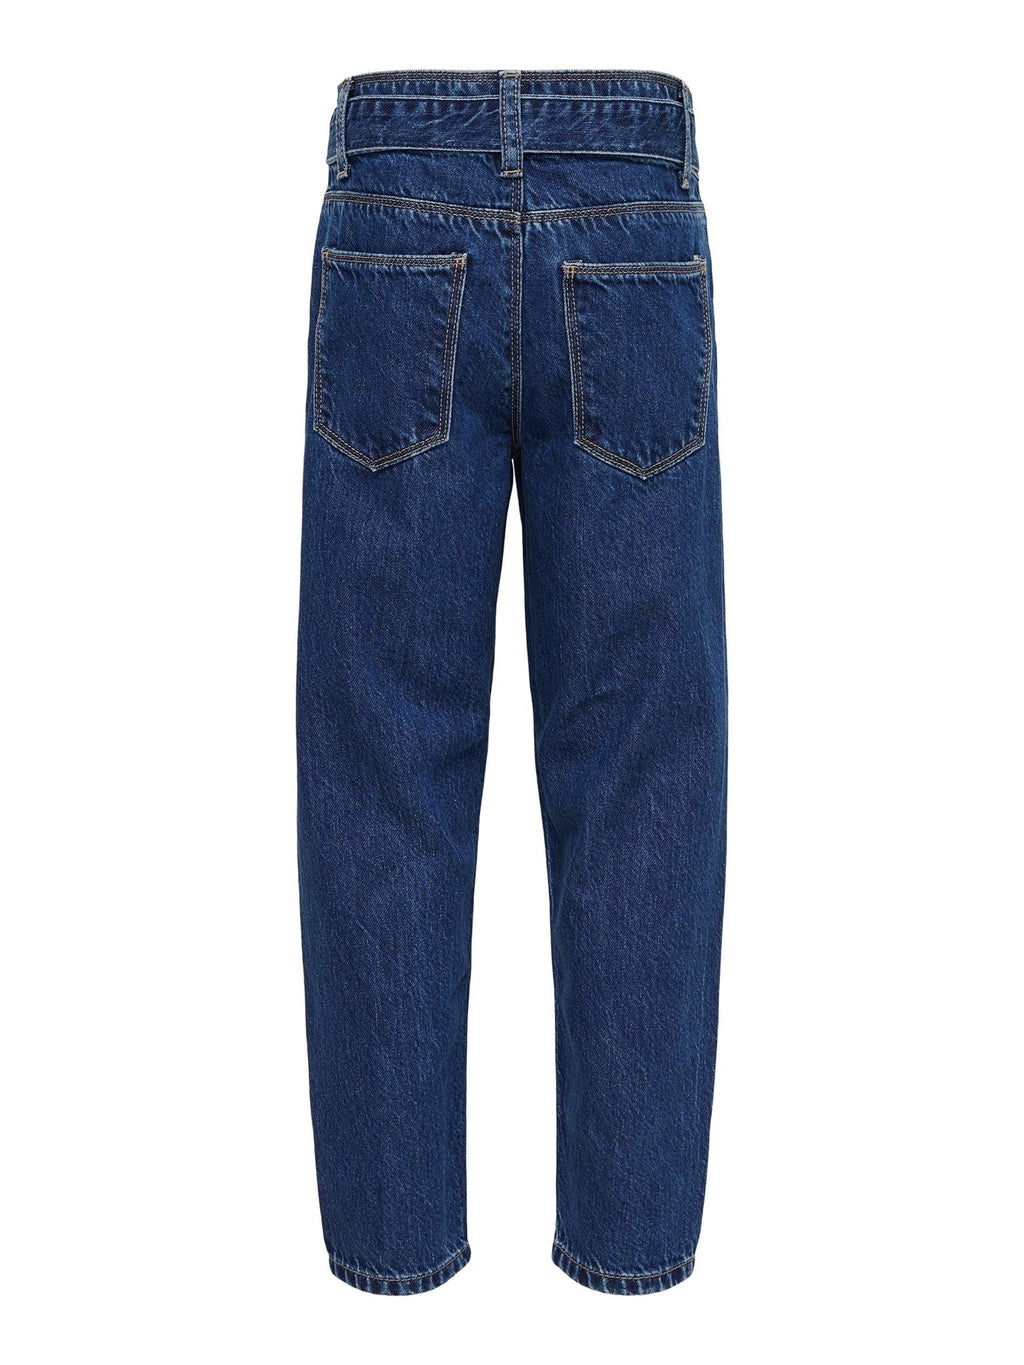 Lu reg wort jeans - licht medium blauwe denim